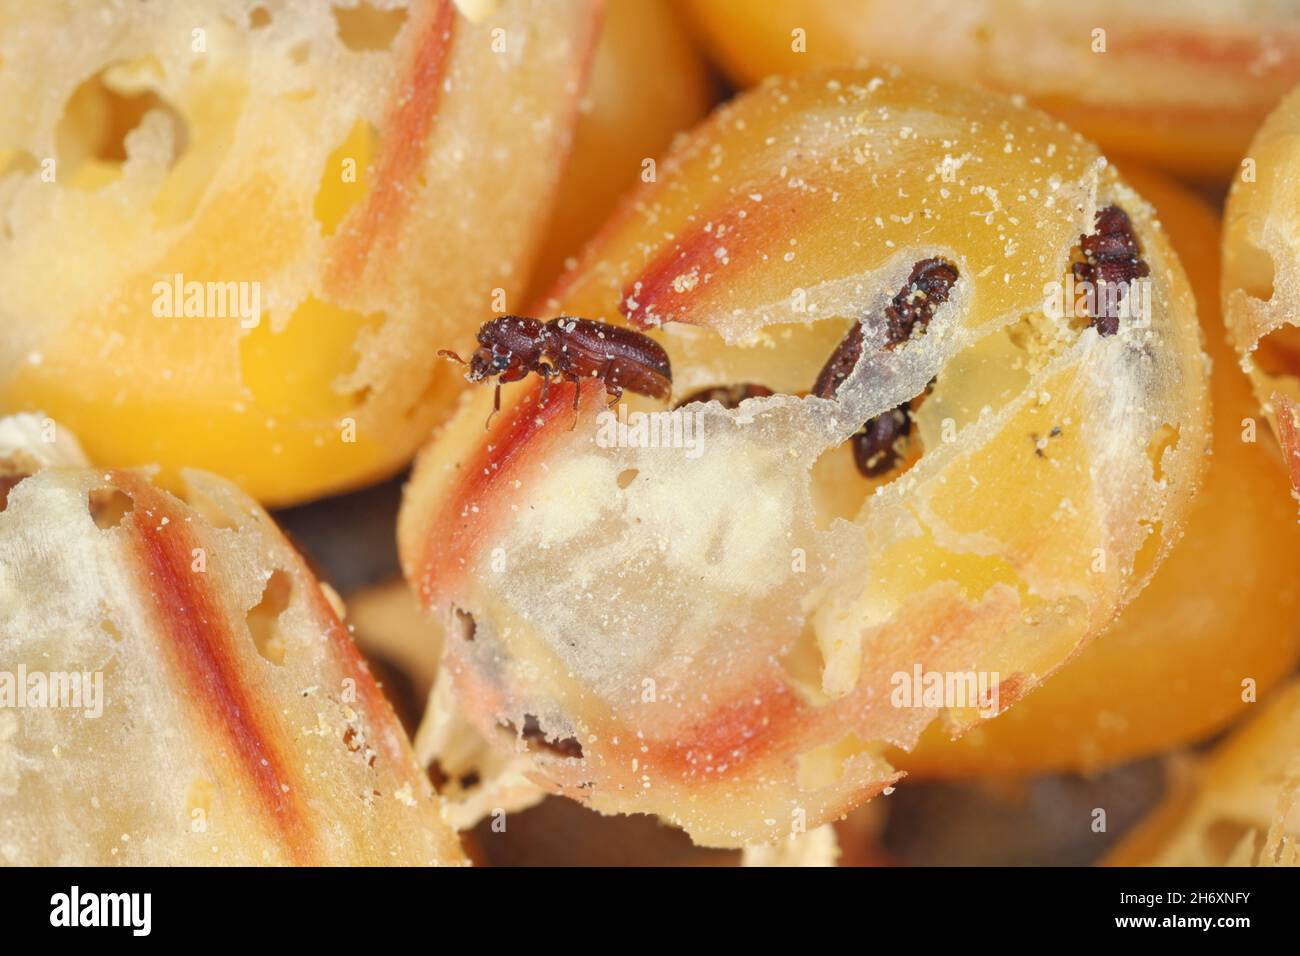 Maiskörner, die von Rhyzopertha dominica beschädigt werden, sind häufig als kleinere Borer bekannt. Es handelt sich um eine gefährliche Schädlingsbefall von gelagerten Getreidekörnern, einschließlich Mais. Stockfoto